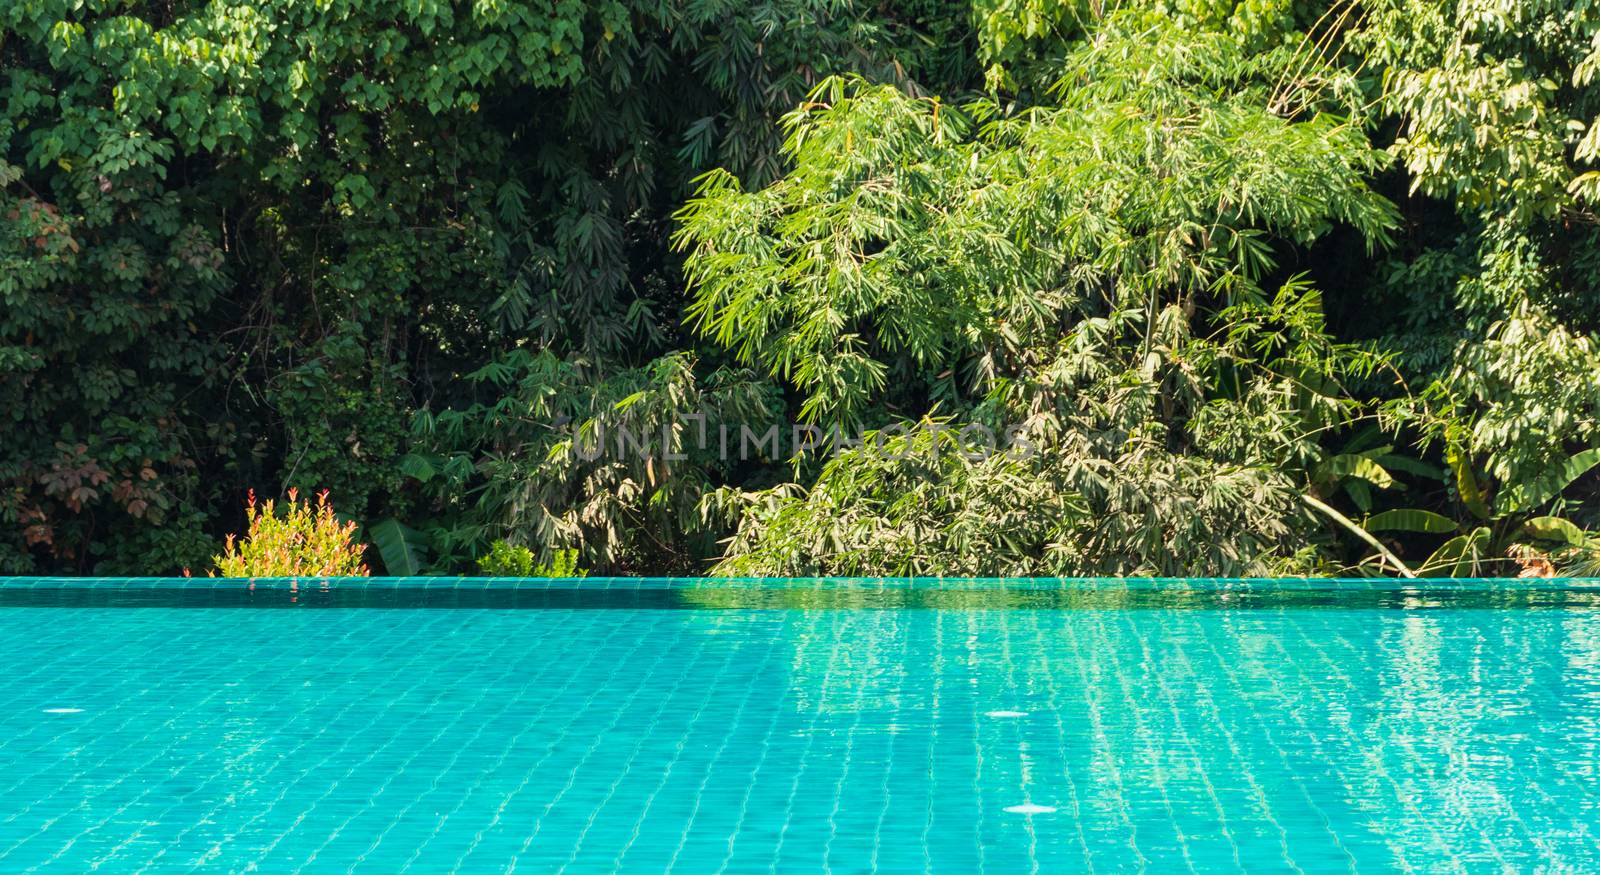 swimming pool in tropical garden by Khankeawsanan